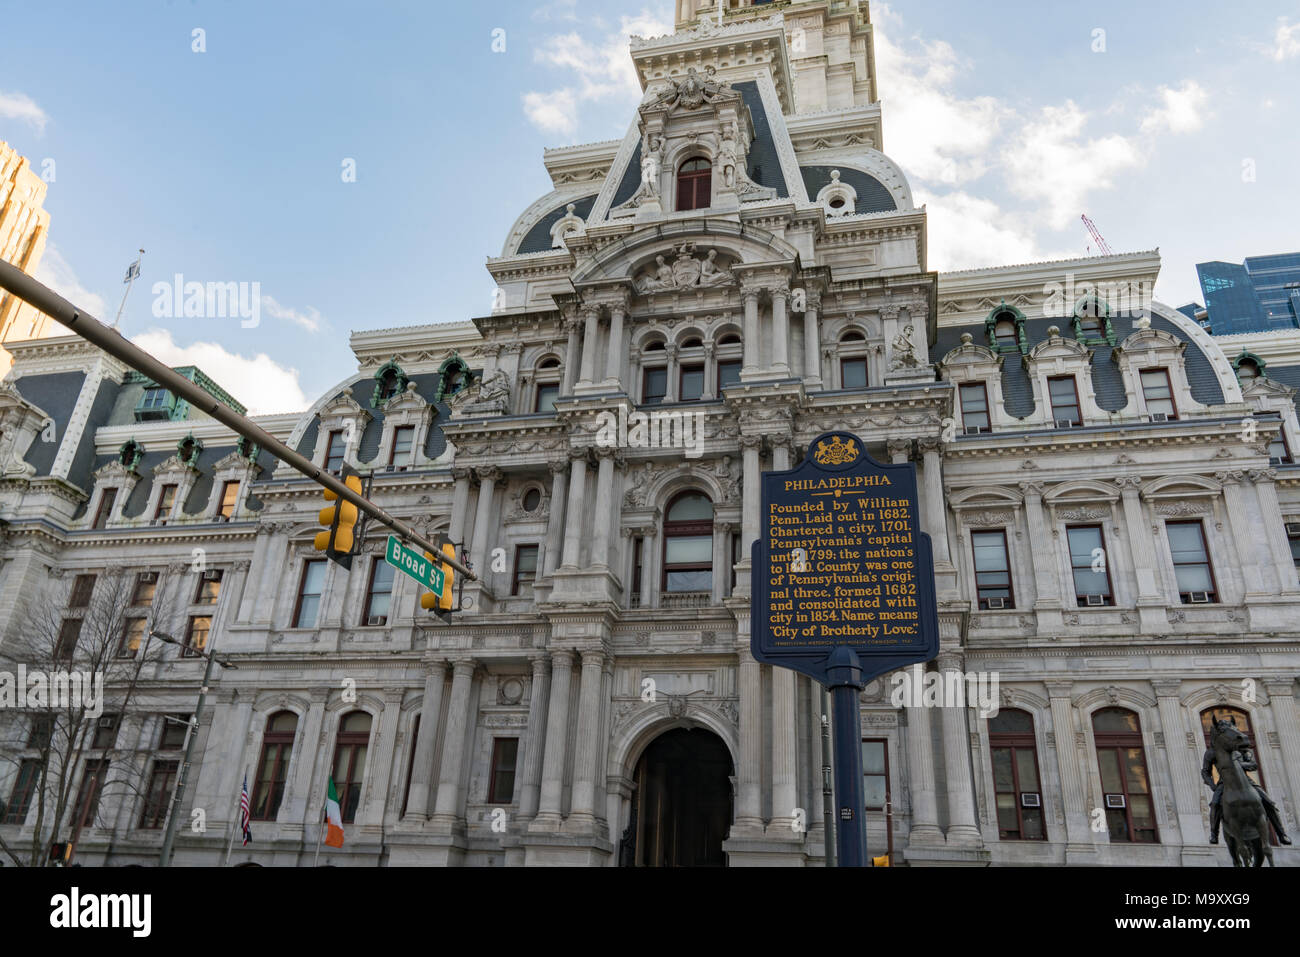 PHILADELPHIA, PA - 10 mars 2018 : Hôtel de ville historique de construire au centre-ville de Philadelphie, Pennsylvanie Banque D'Images